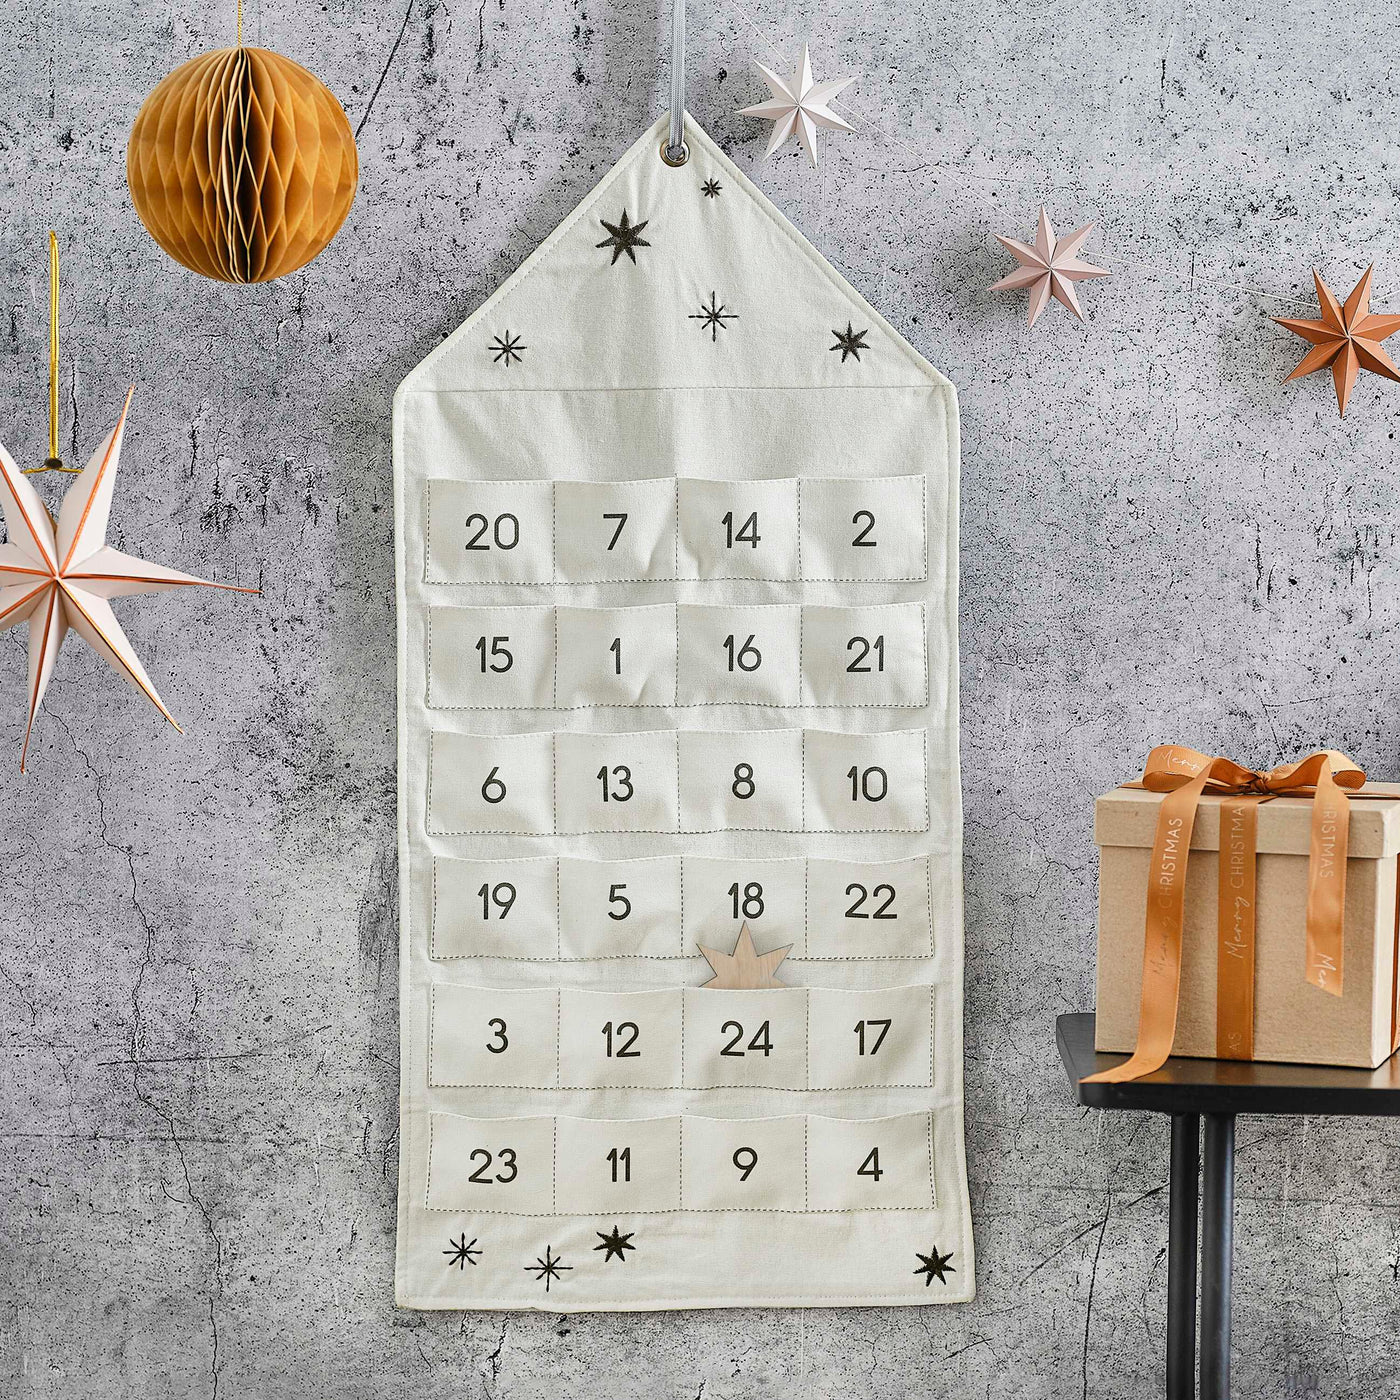 Advent calendar cloth bags and mistletoe